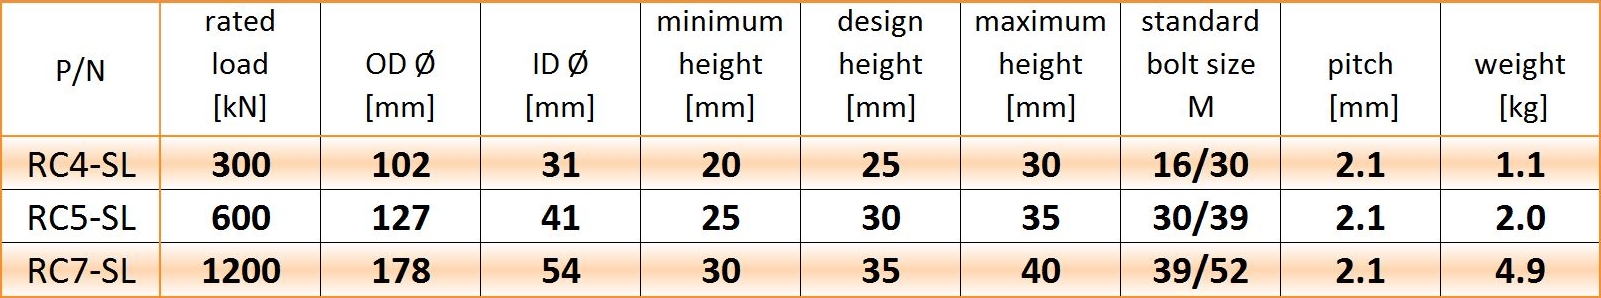 SL metric table 20-3-12.JPG